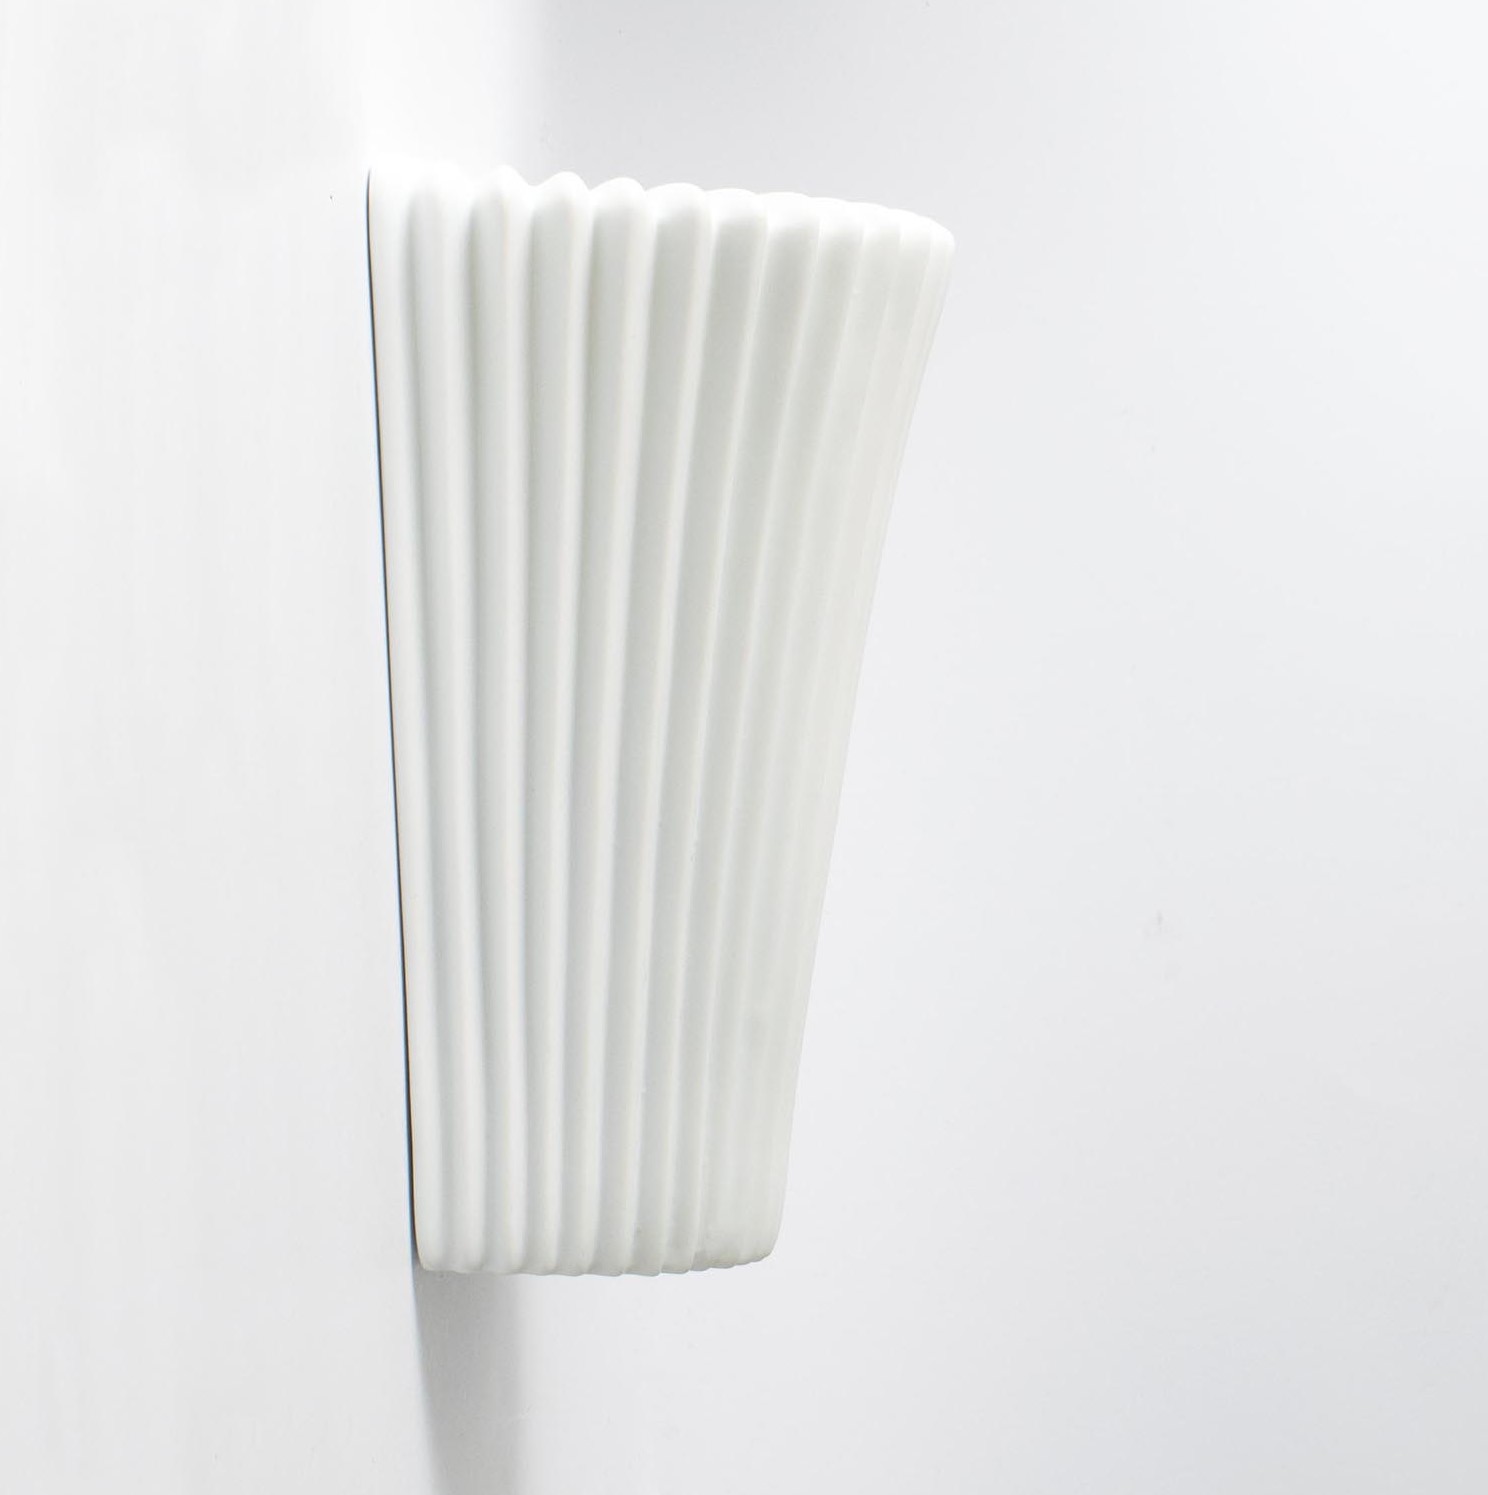 Para lamp - kinkietów z białej biskwitowej porcelany wyprodukowanych dla Ikea